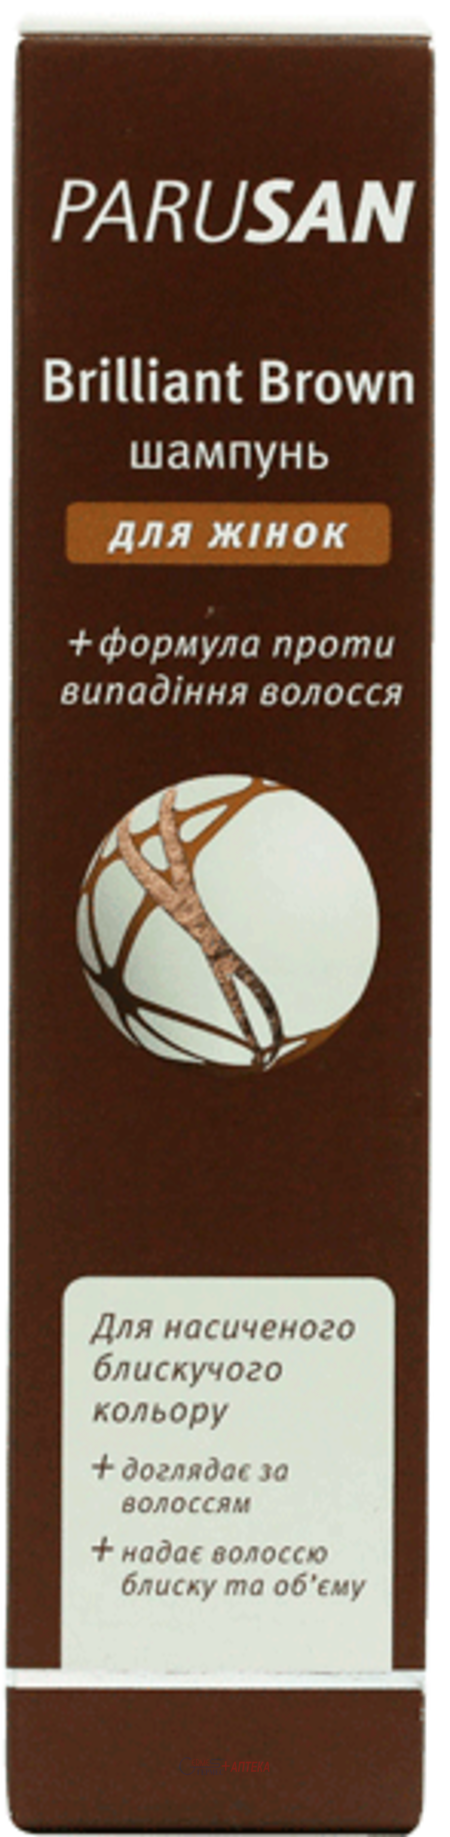 PARUSAN Brilliant Brown Шампунь д/женщин 200мл (ПАРУСАН)